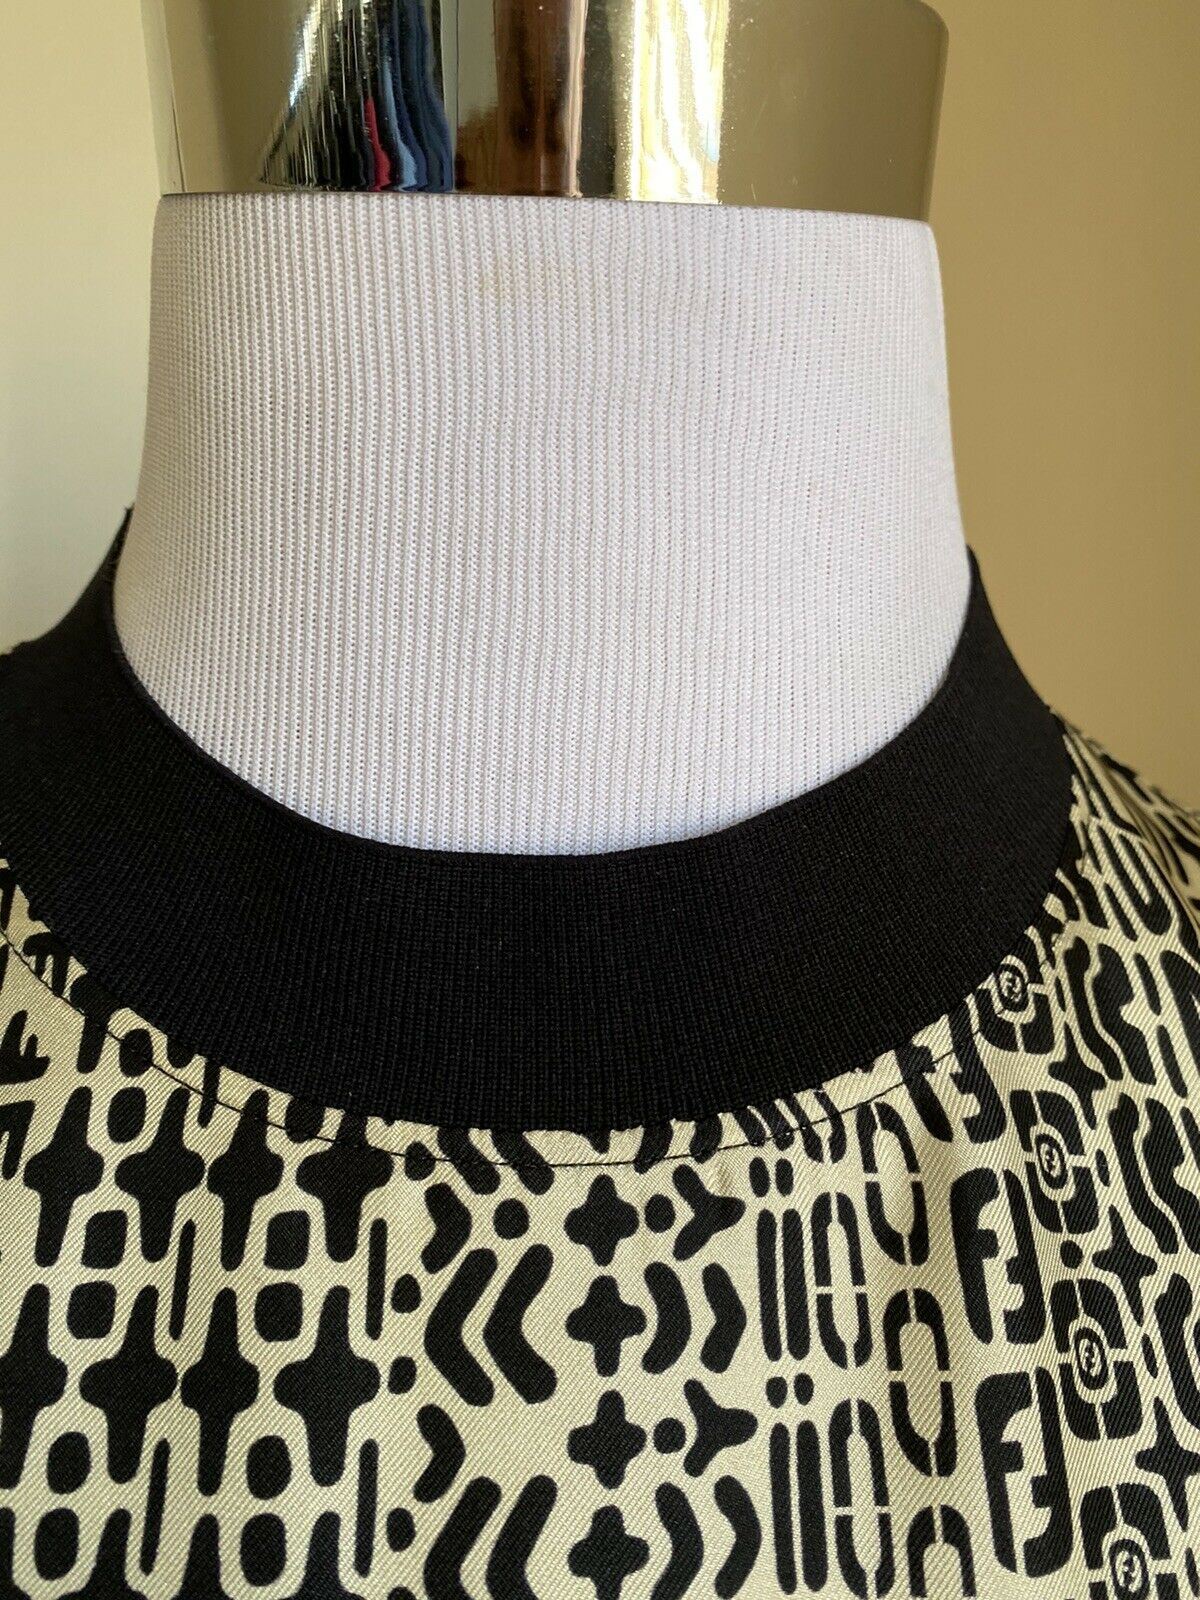 New $920 Fendi Men FF Monogram oversized Short Sleeve T Shirt XL White/Black